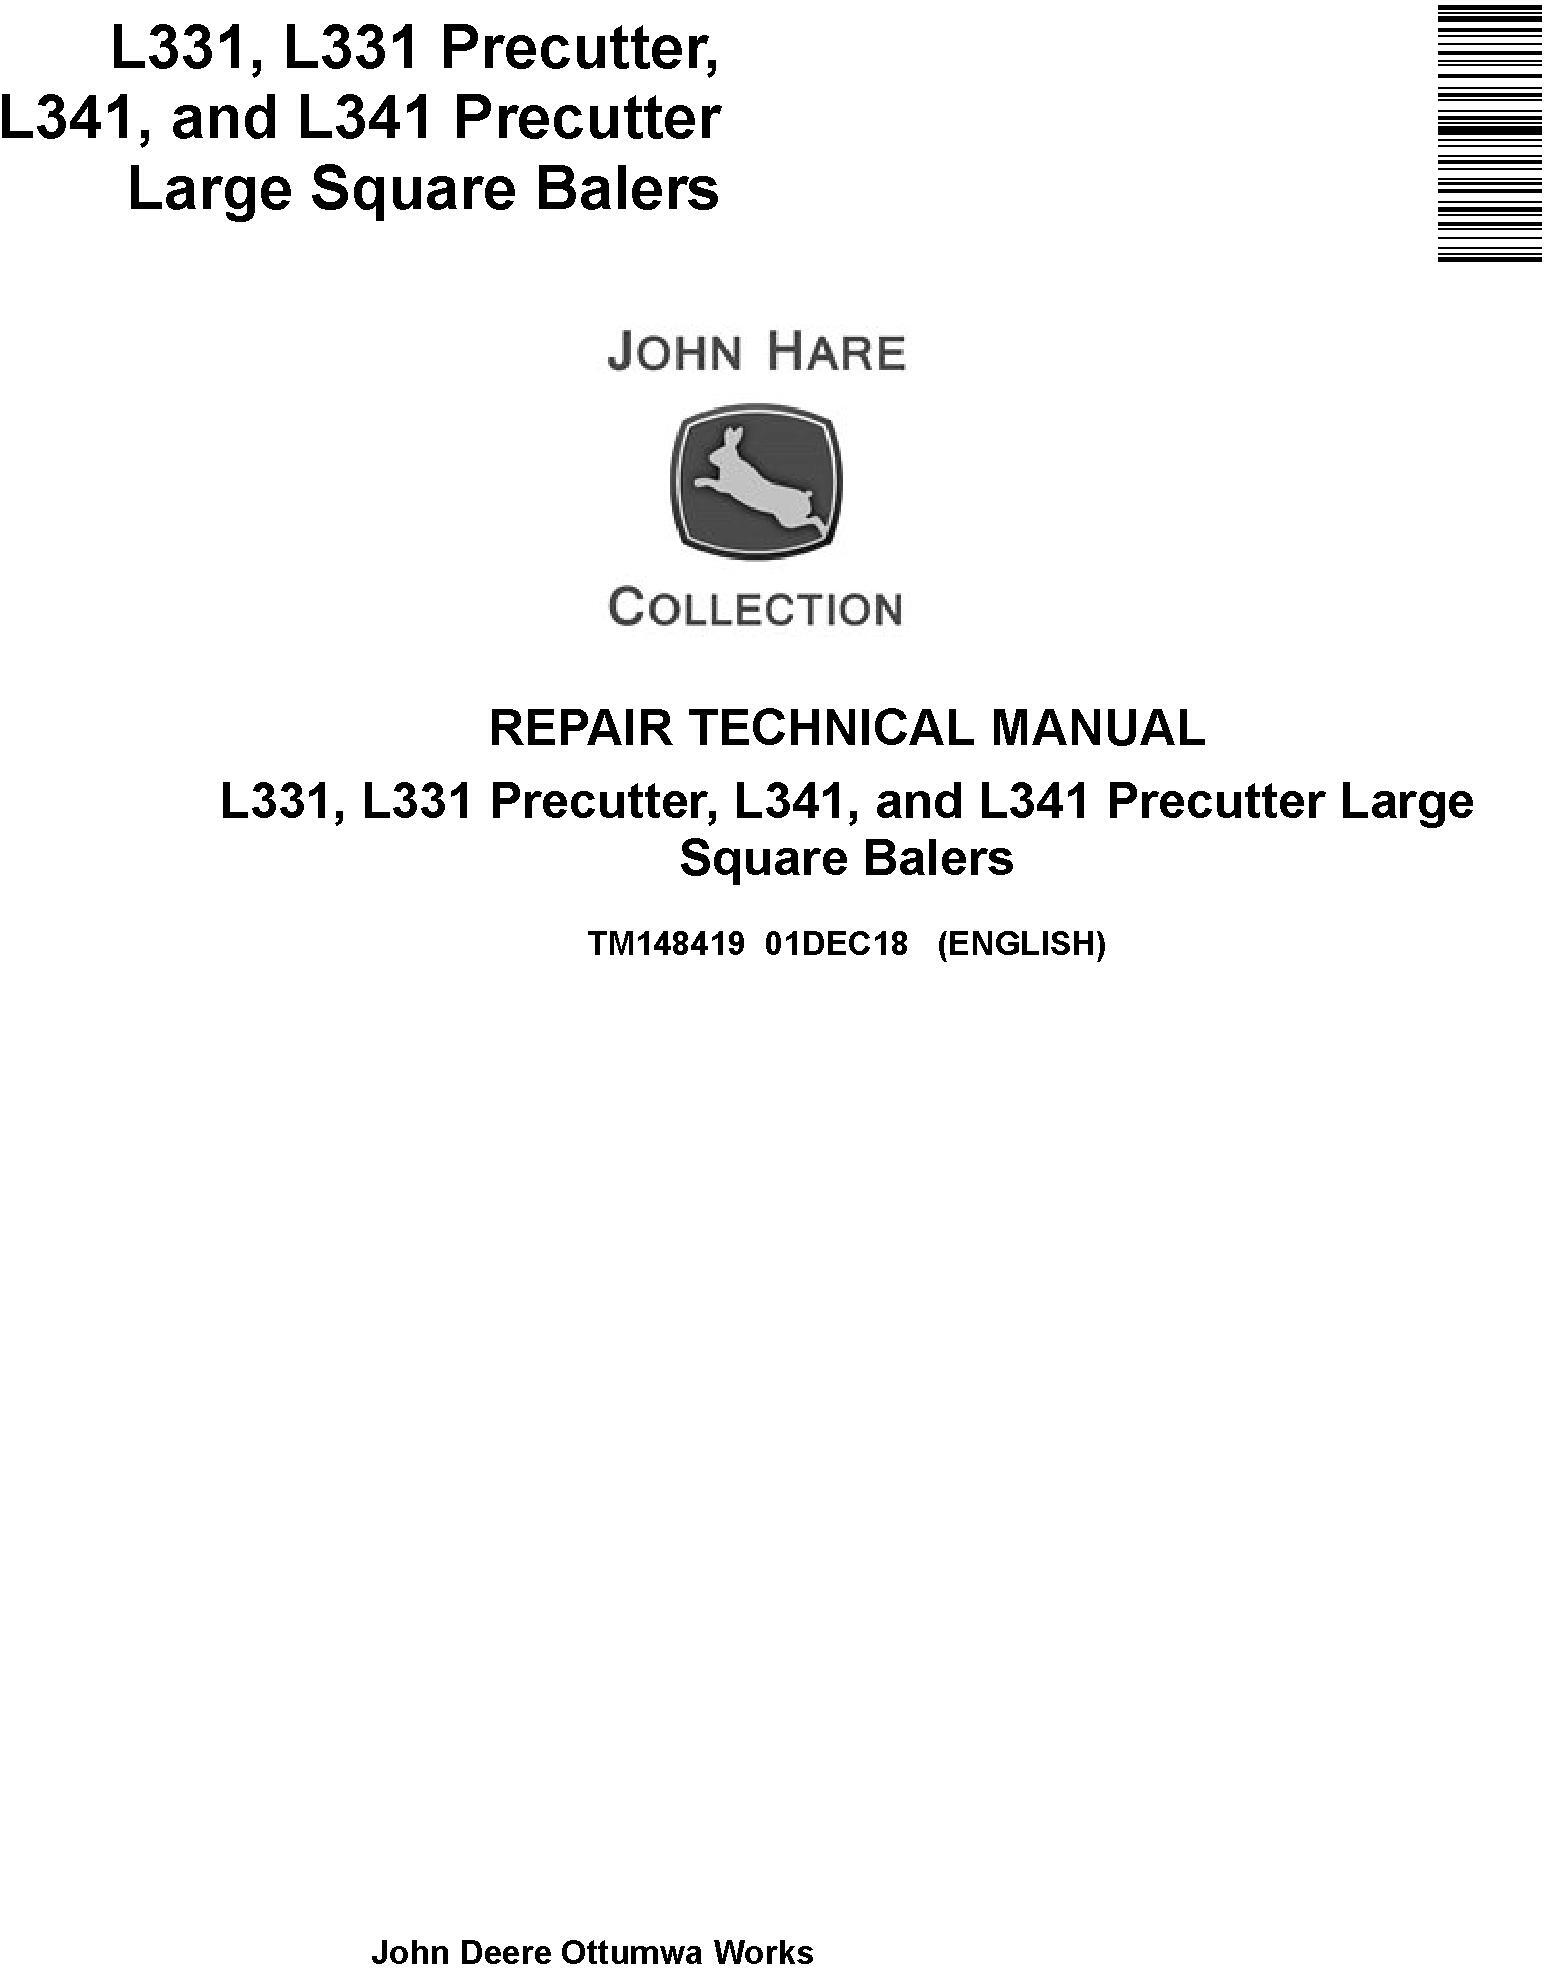 John Deere L331 L341 Precutter Large Square Balers Repair Technical Manual TM148419